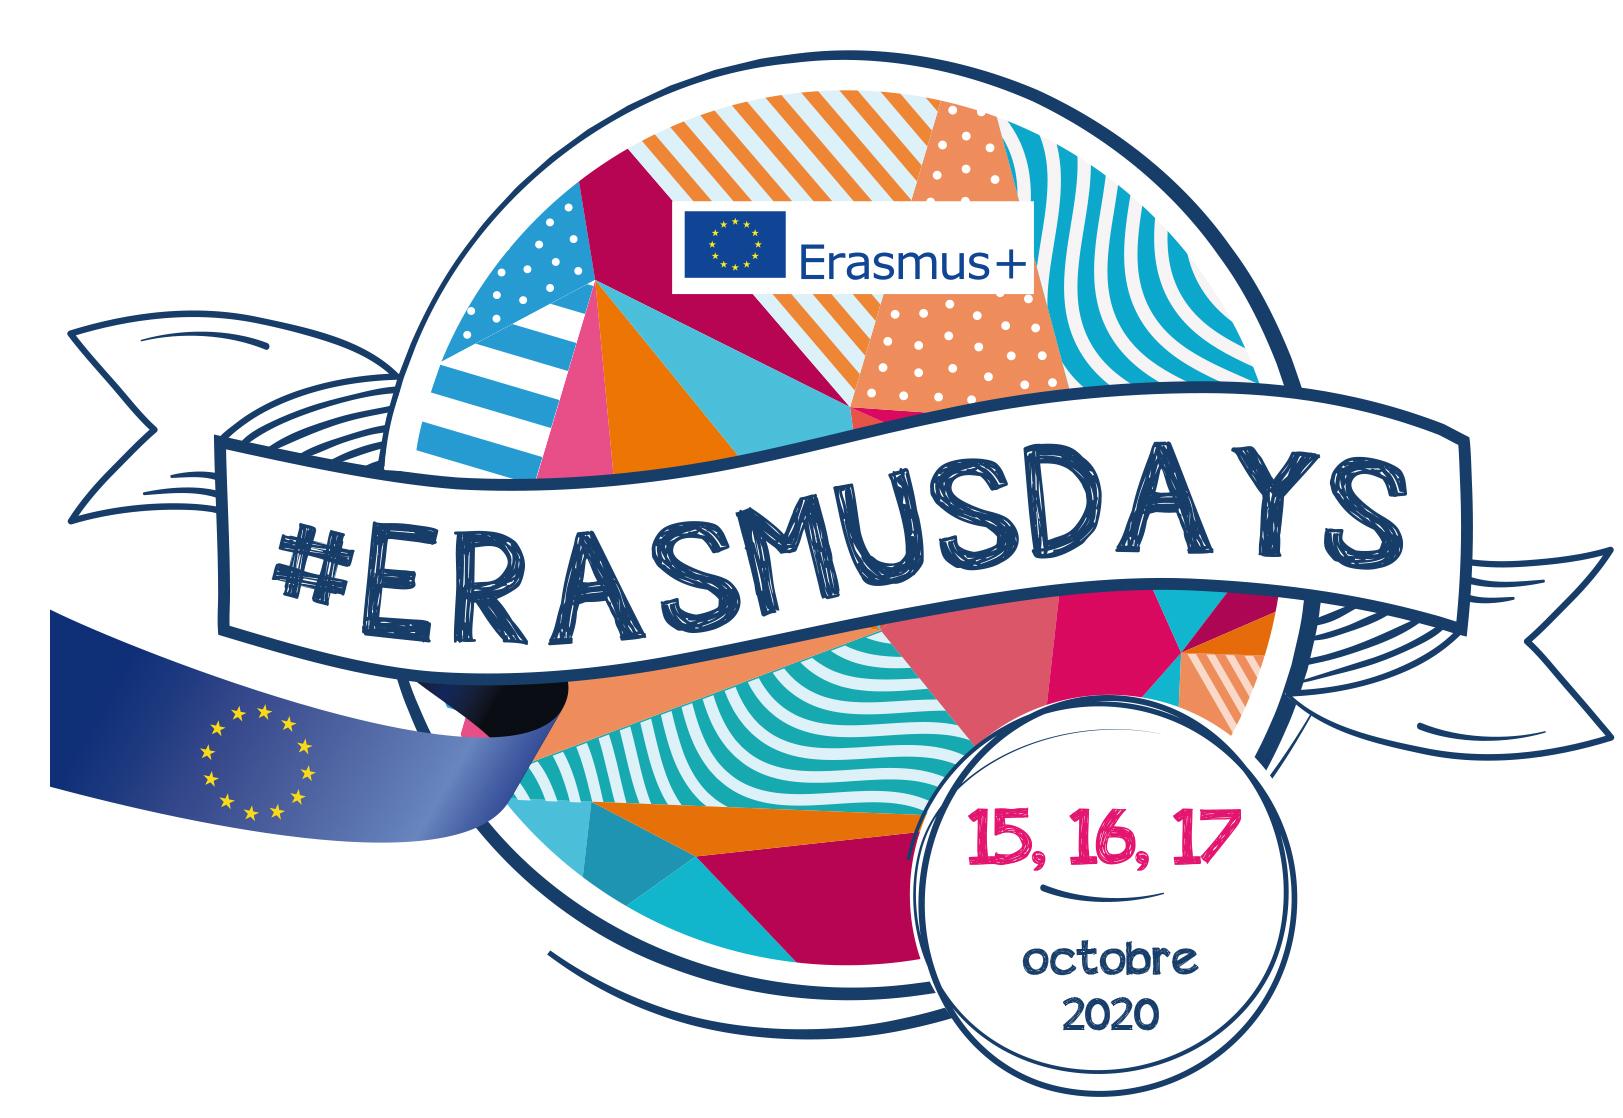 Erasmus days 2020